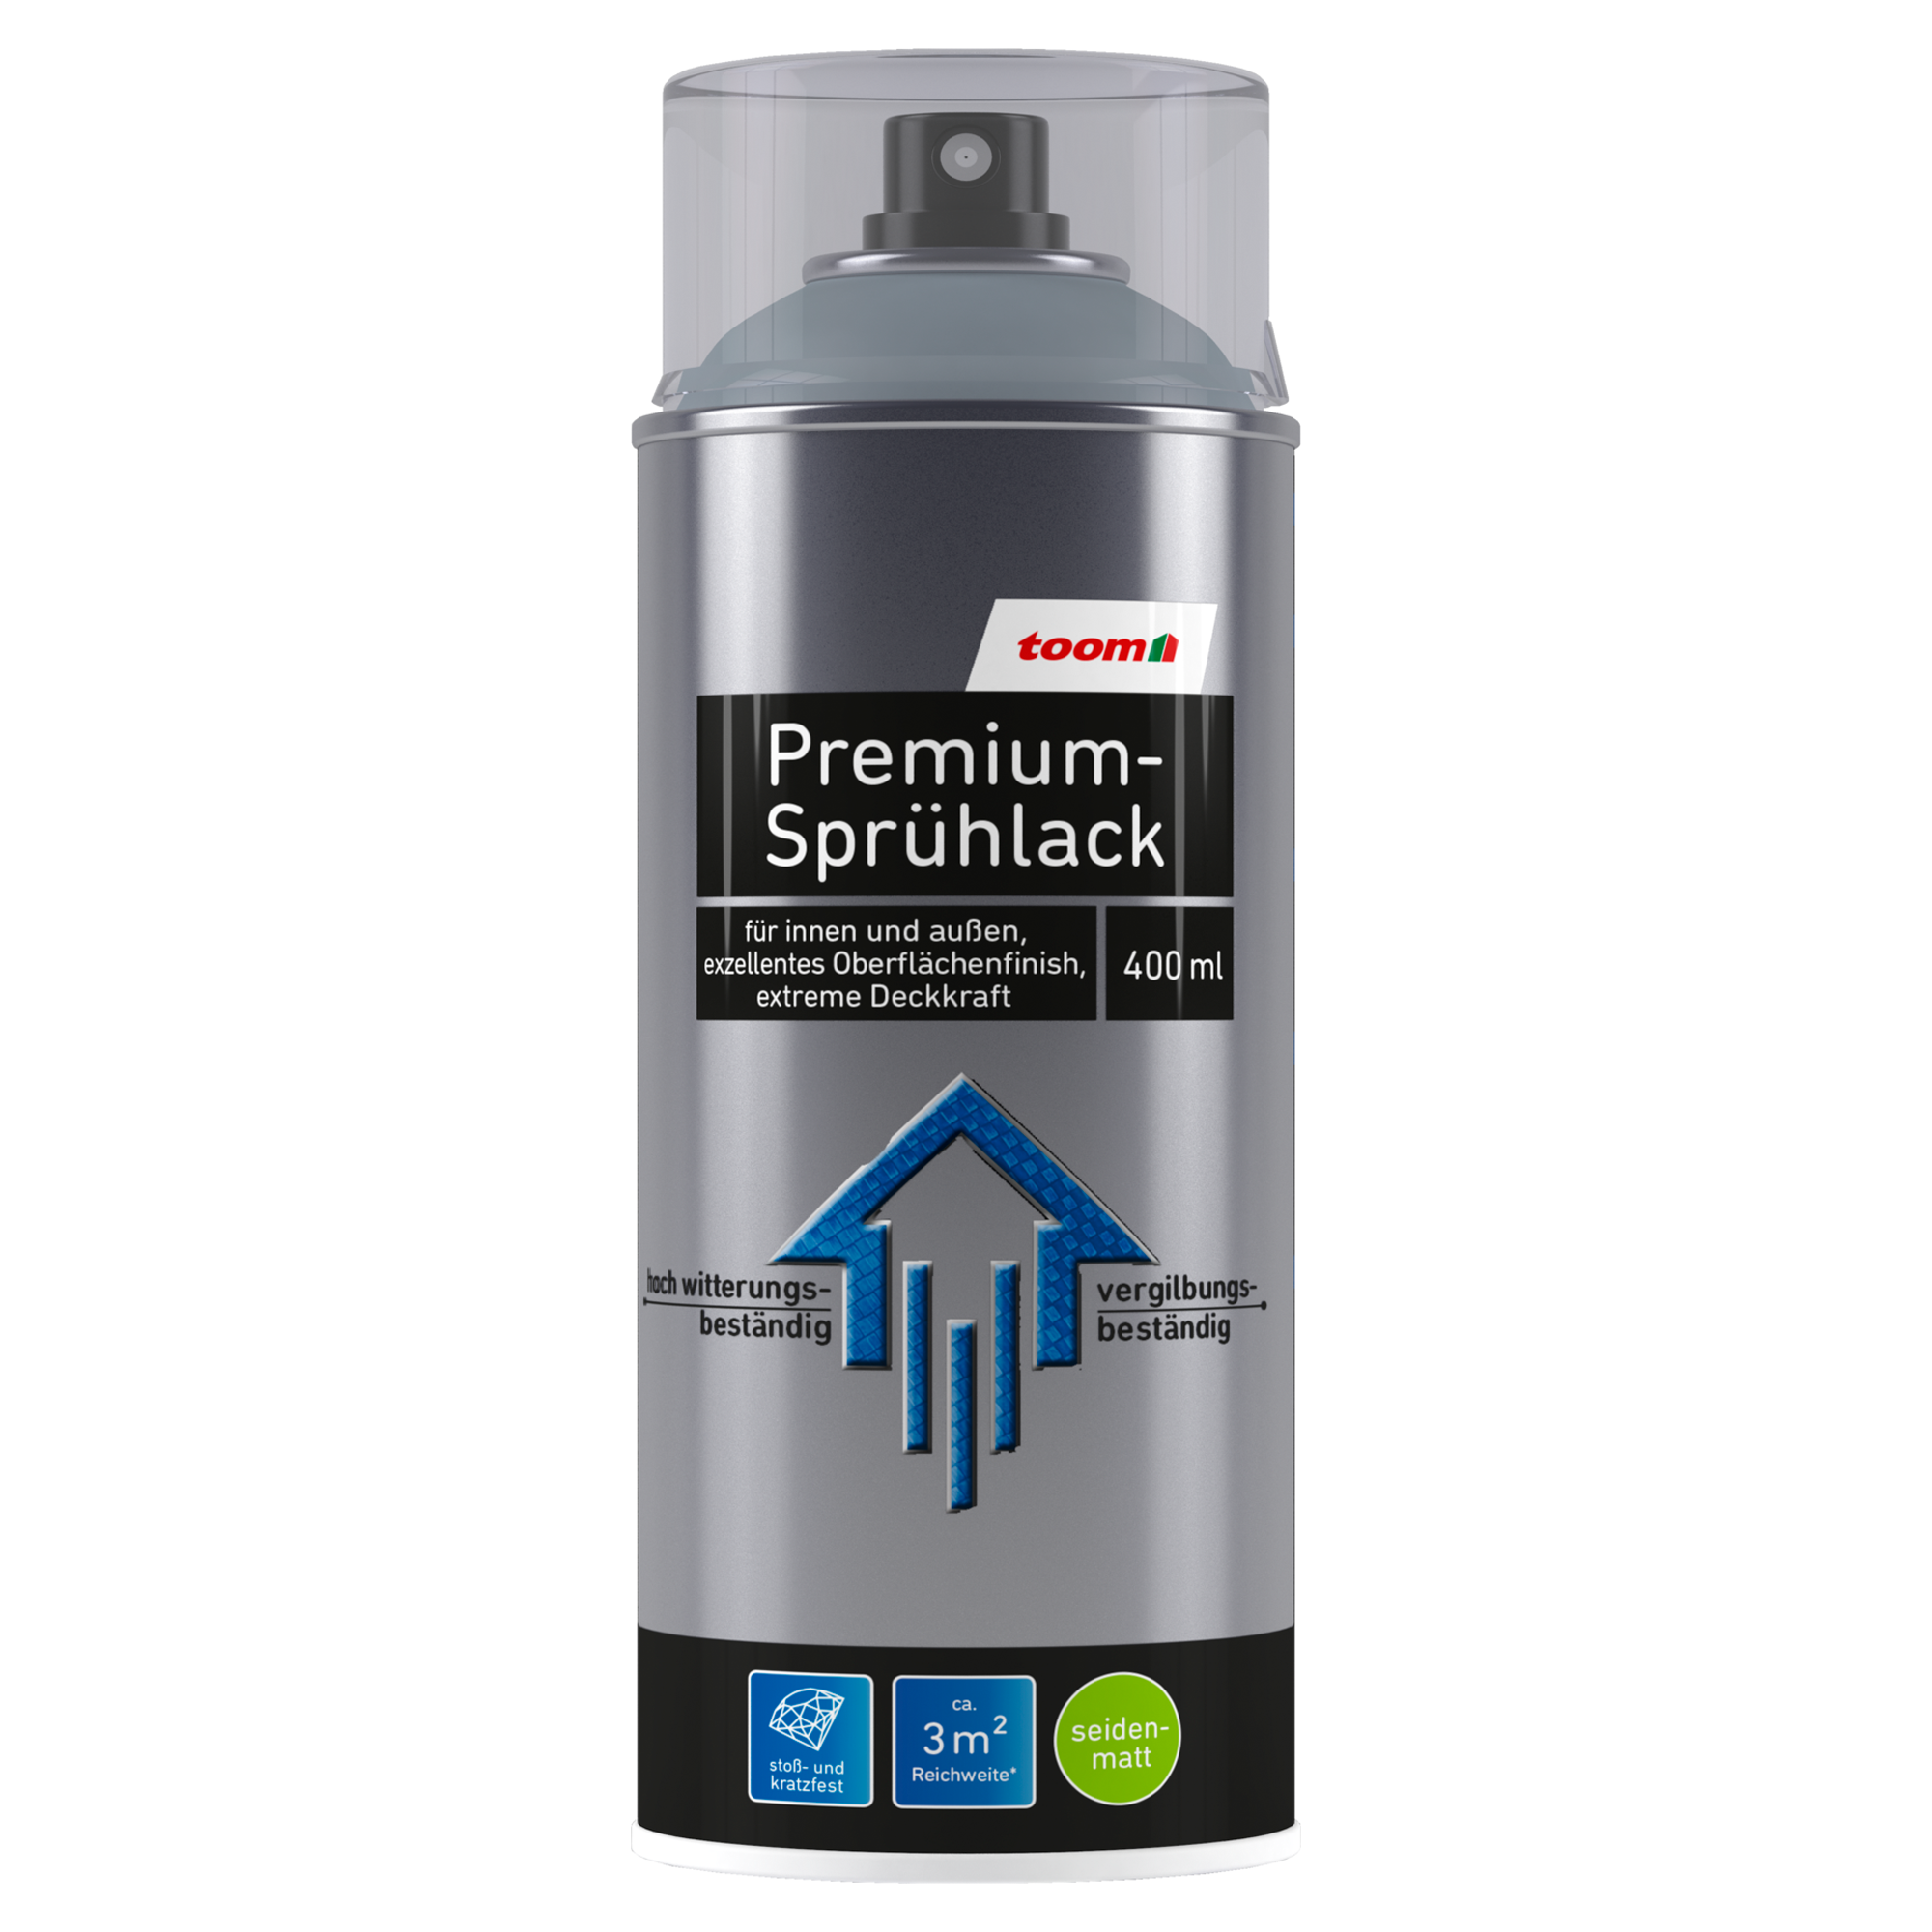 Premium-Sprühlack silberfarben seidenmatt 400 ml + product picture